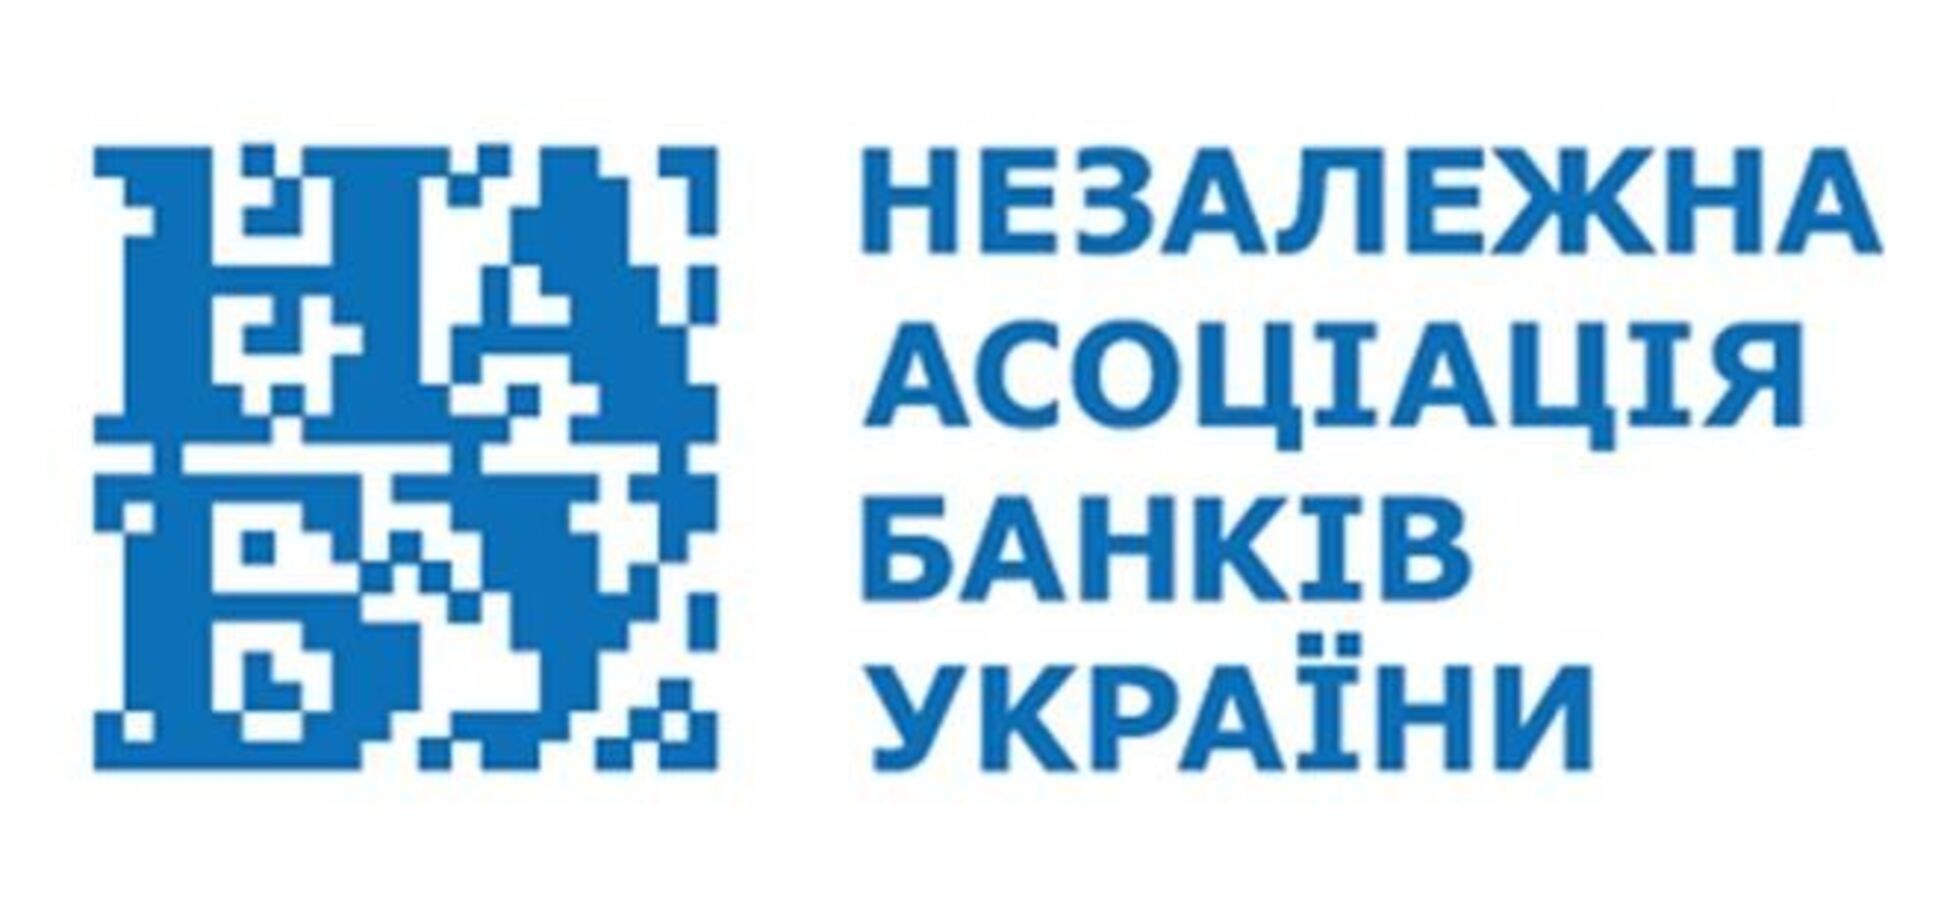 Банкиры поддерживают территориальную целостность Украины